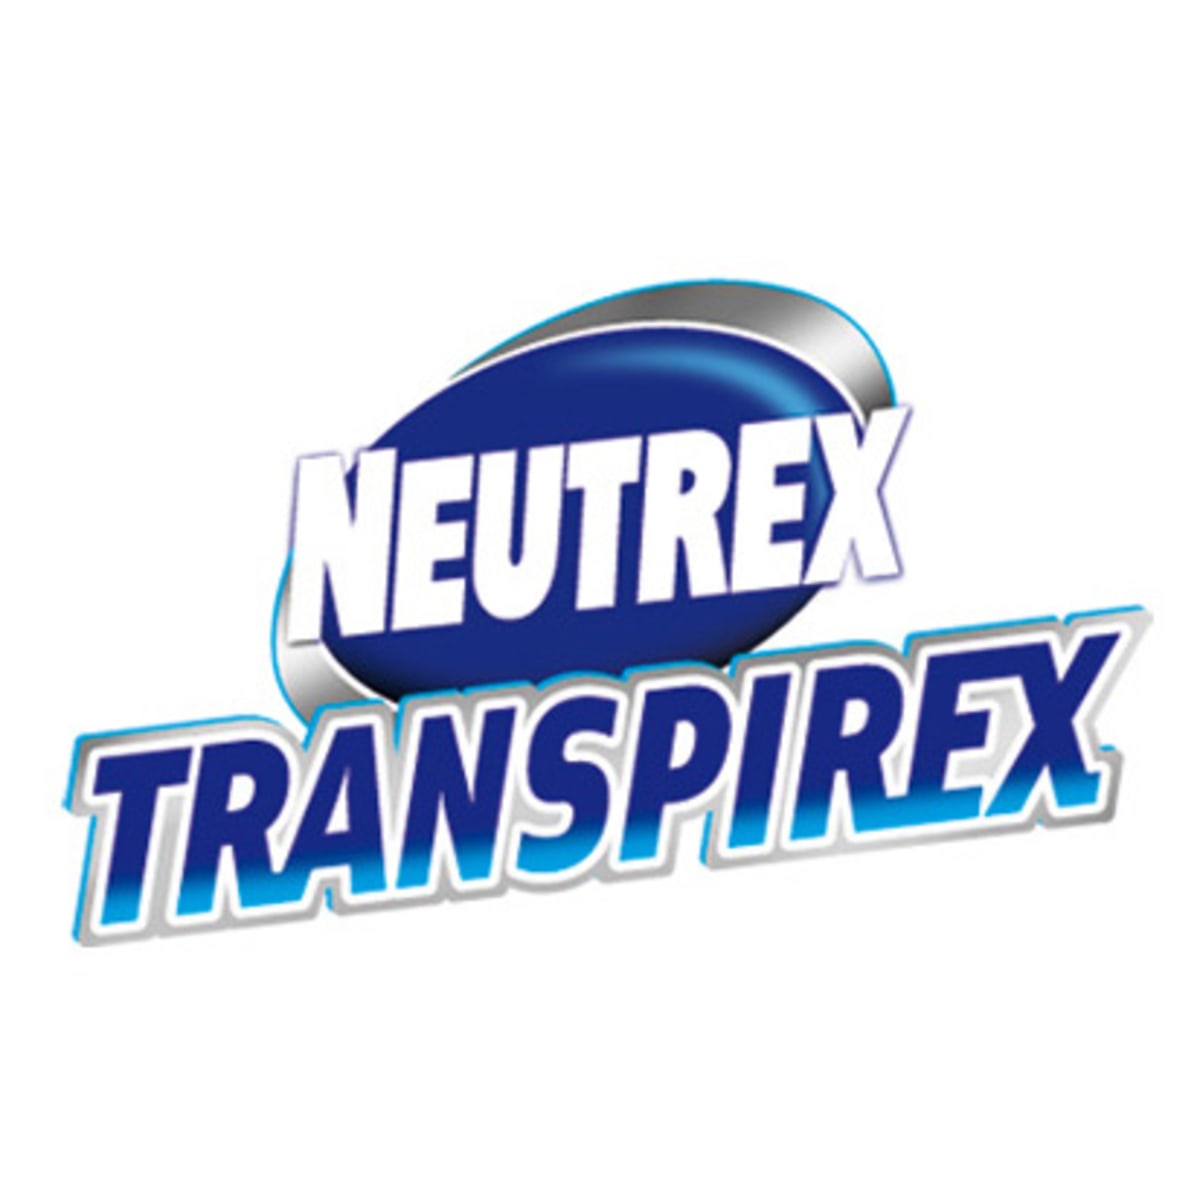 Acción Neutrex Transpirex